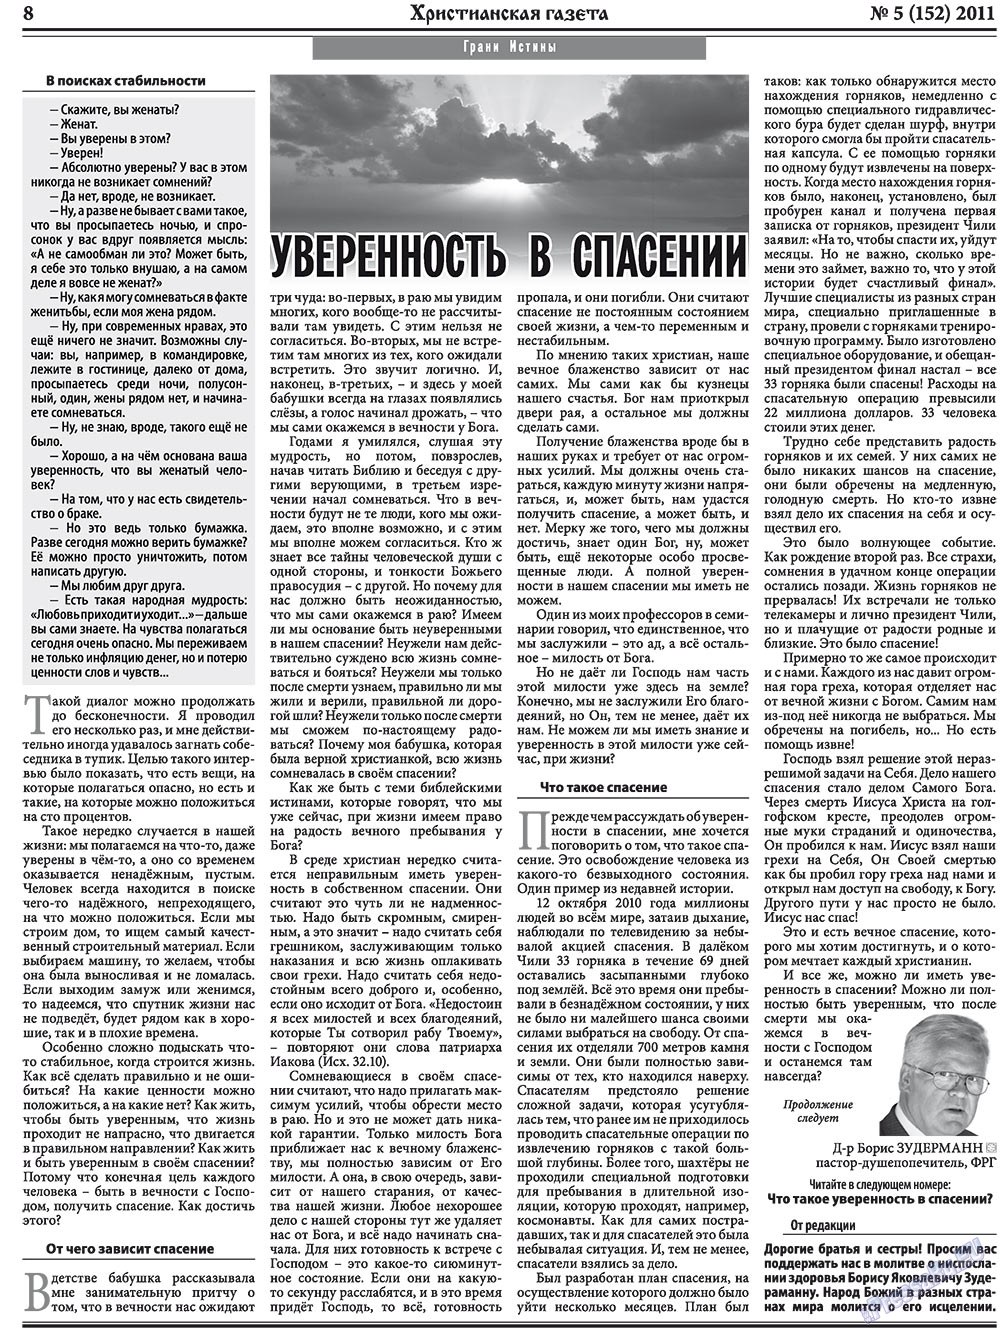 Христианская газета, газета. 2011 №5 стр.8